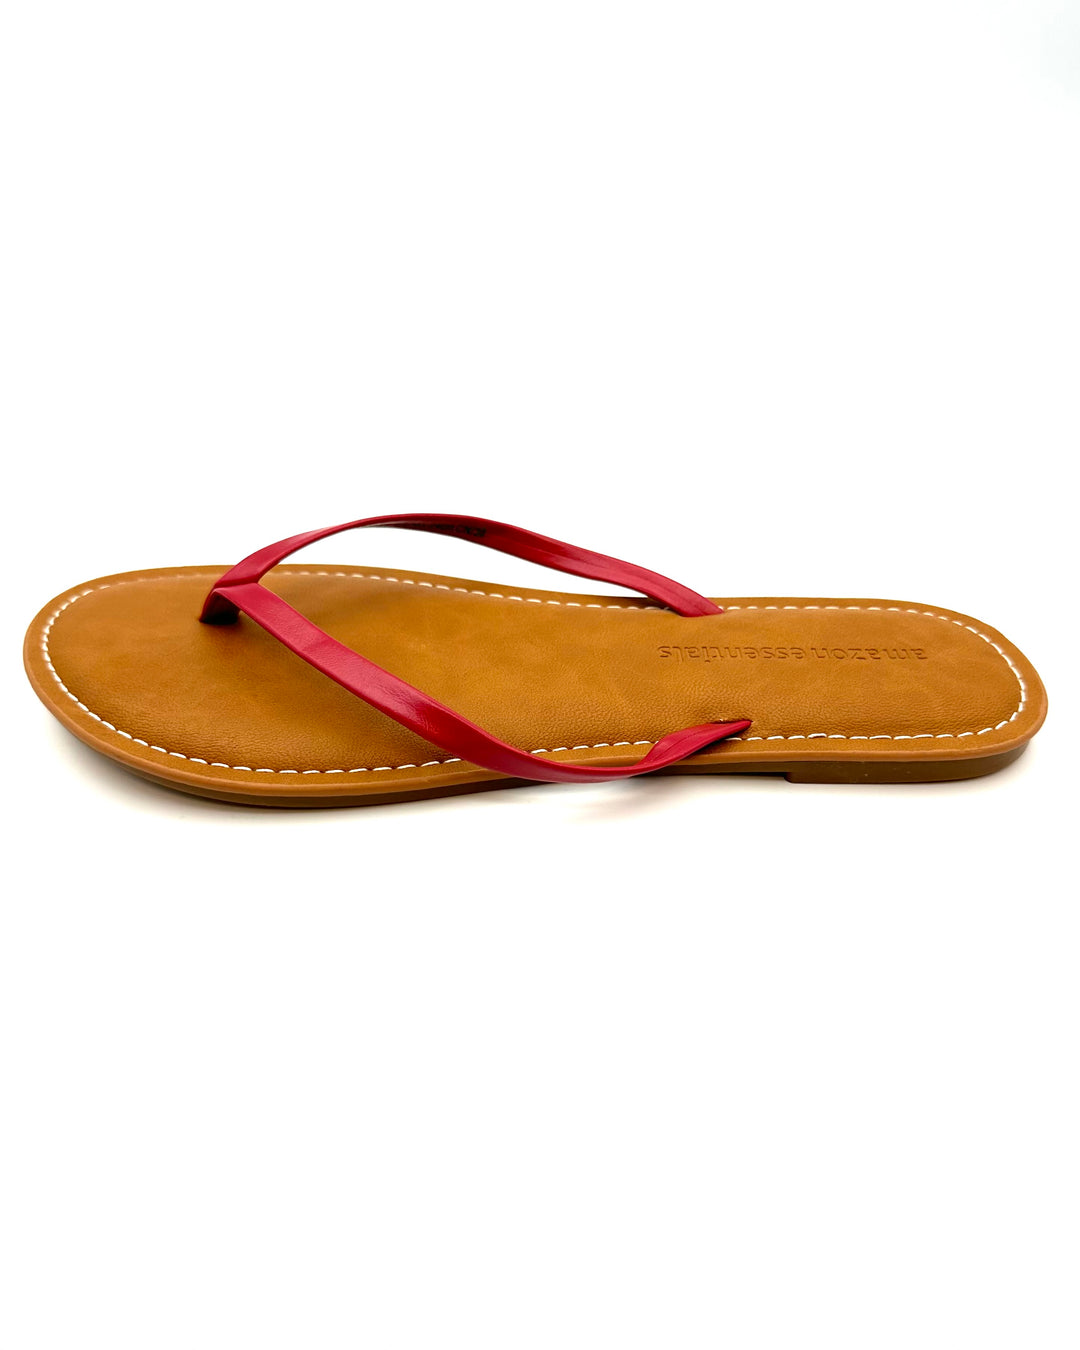 Red Flip Flops - Size 7